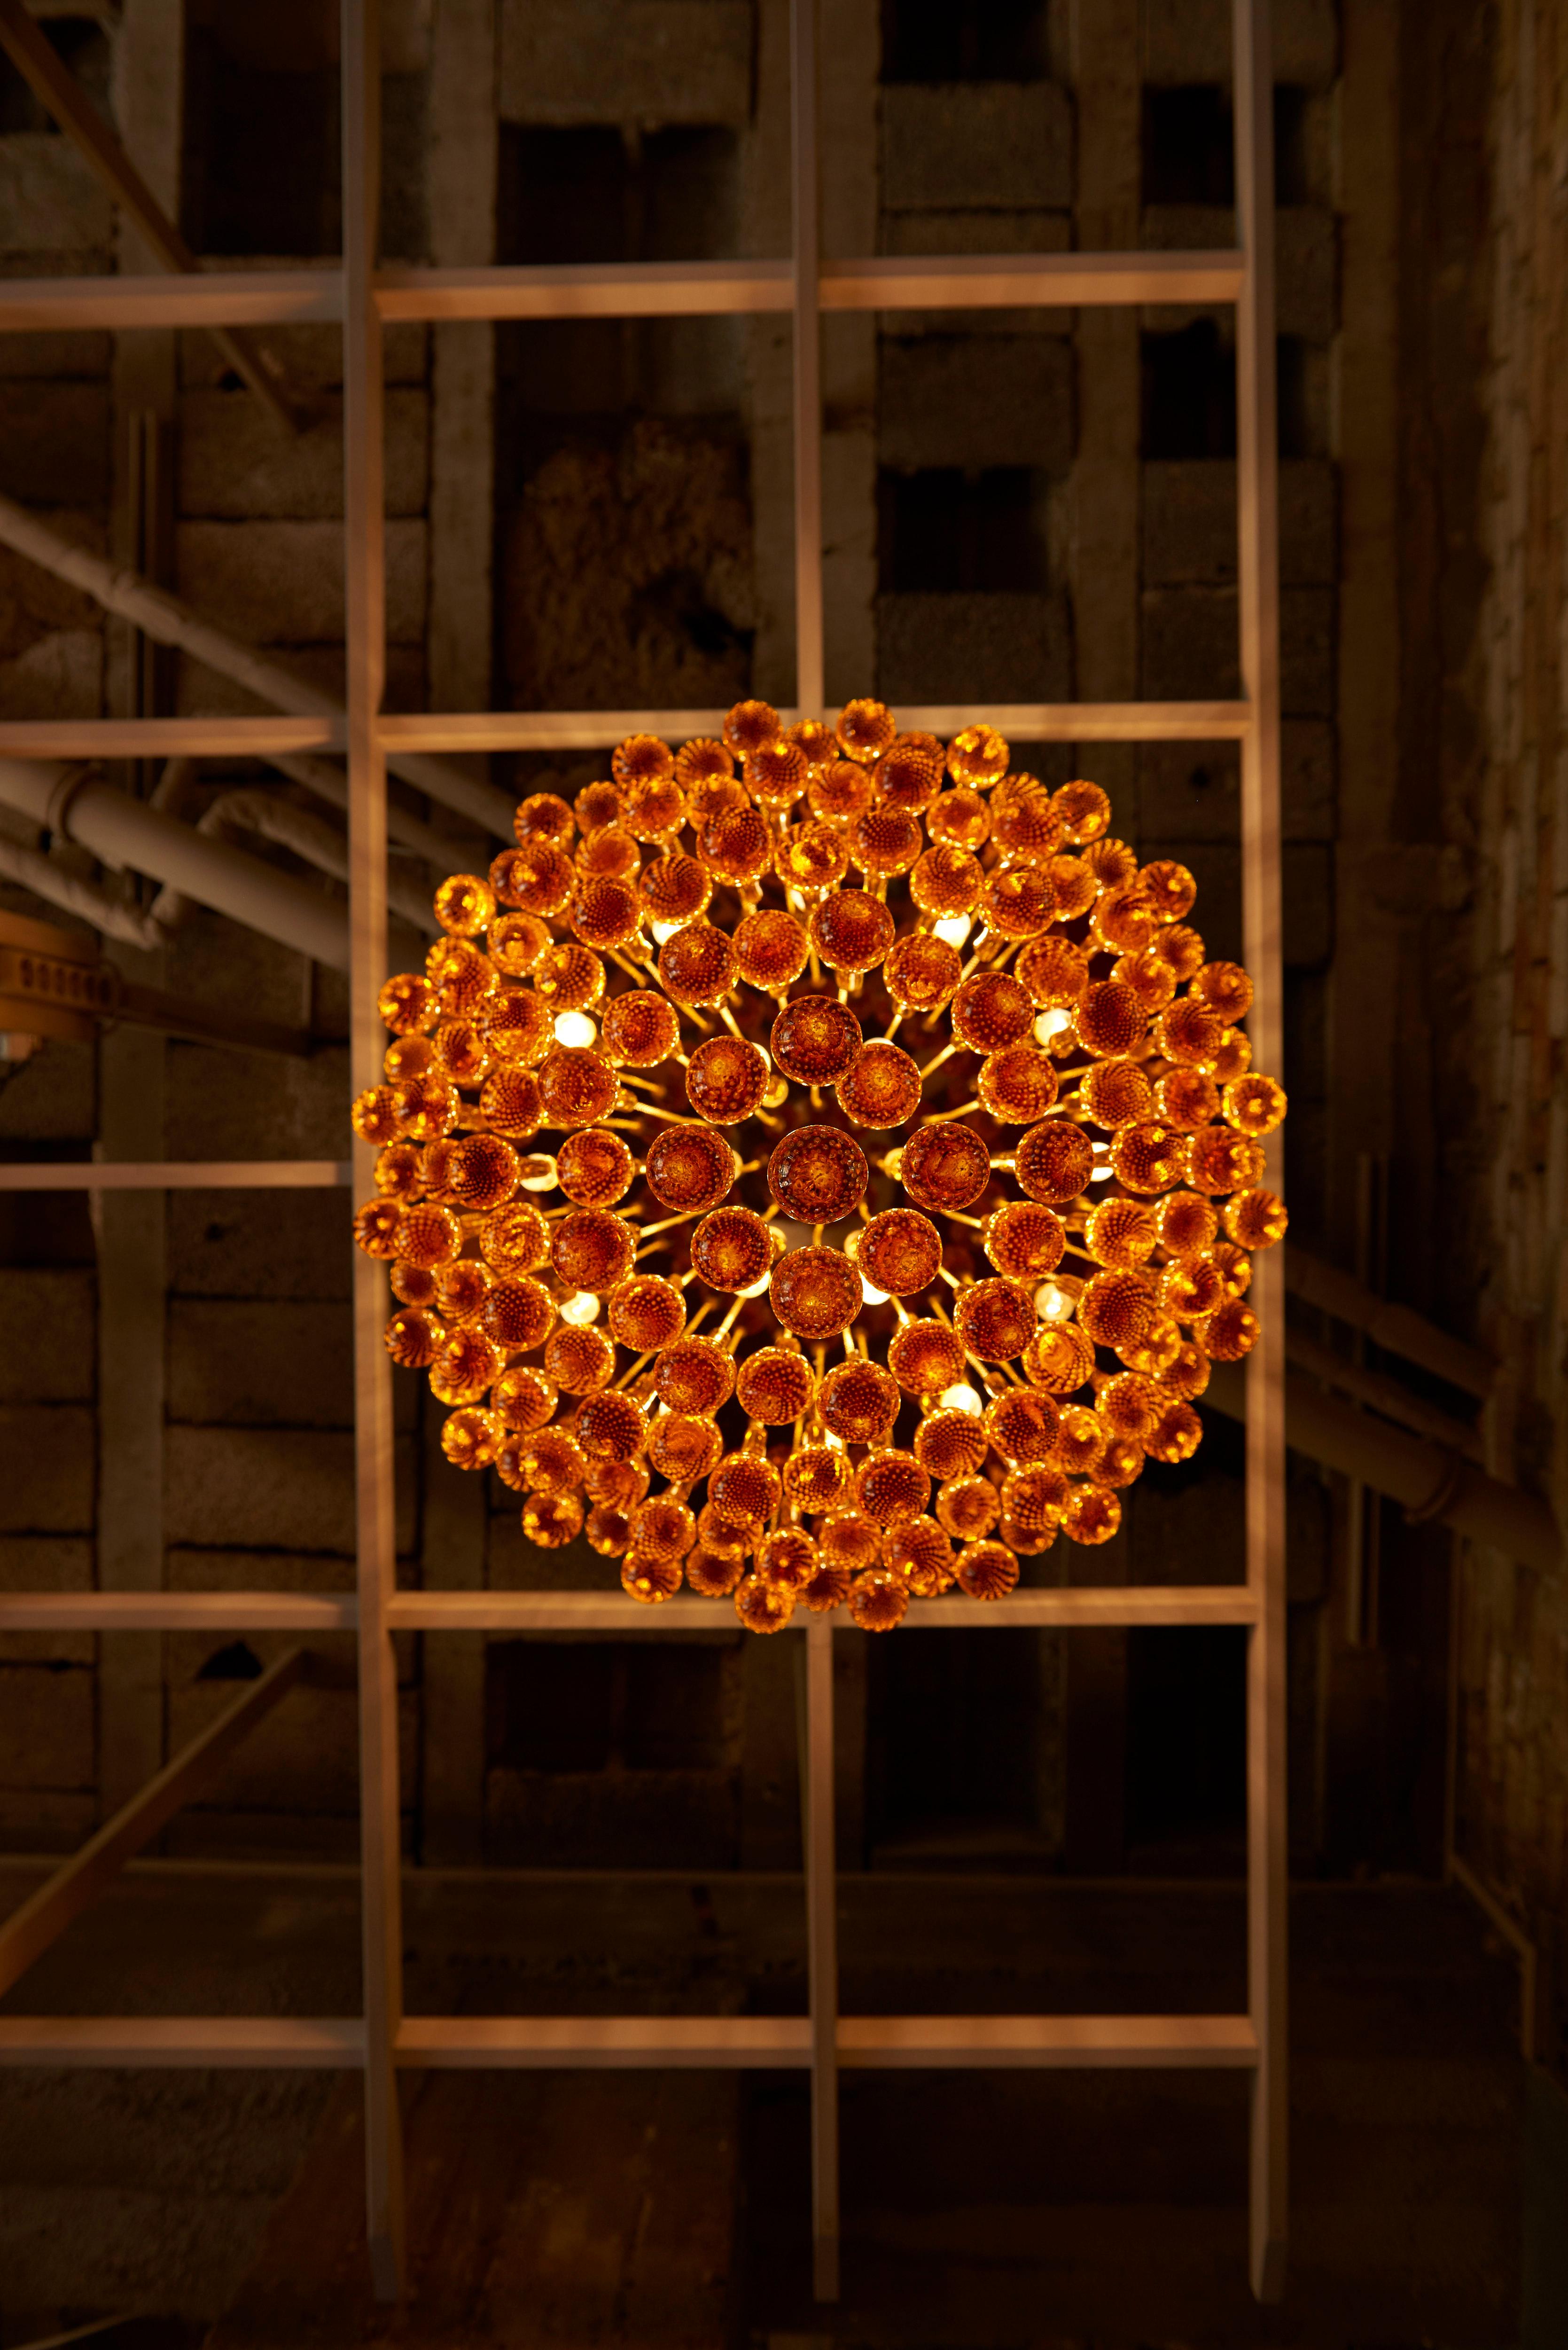 Luminaire en laiton monumental et verre de Murano ambré en forme de larme. Le montage encastré extra large attire le regard dans chaque salon ou hall d'entrée et apporte une lumière merveilleuse à chaque pièce. 18 ampoules E14.

Pour plus de